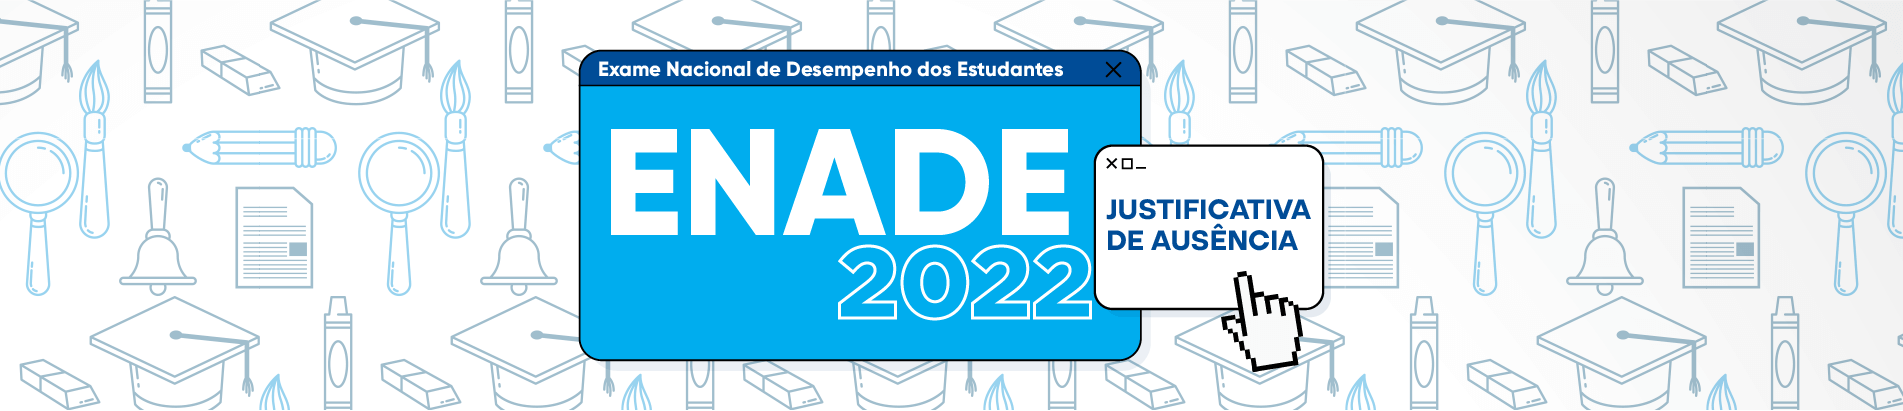 DESKTOP Banner ENADE 2022 justificativa de ausência